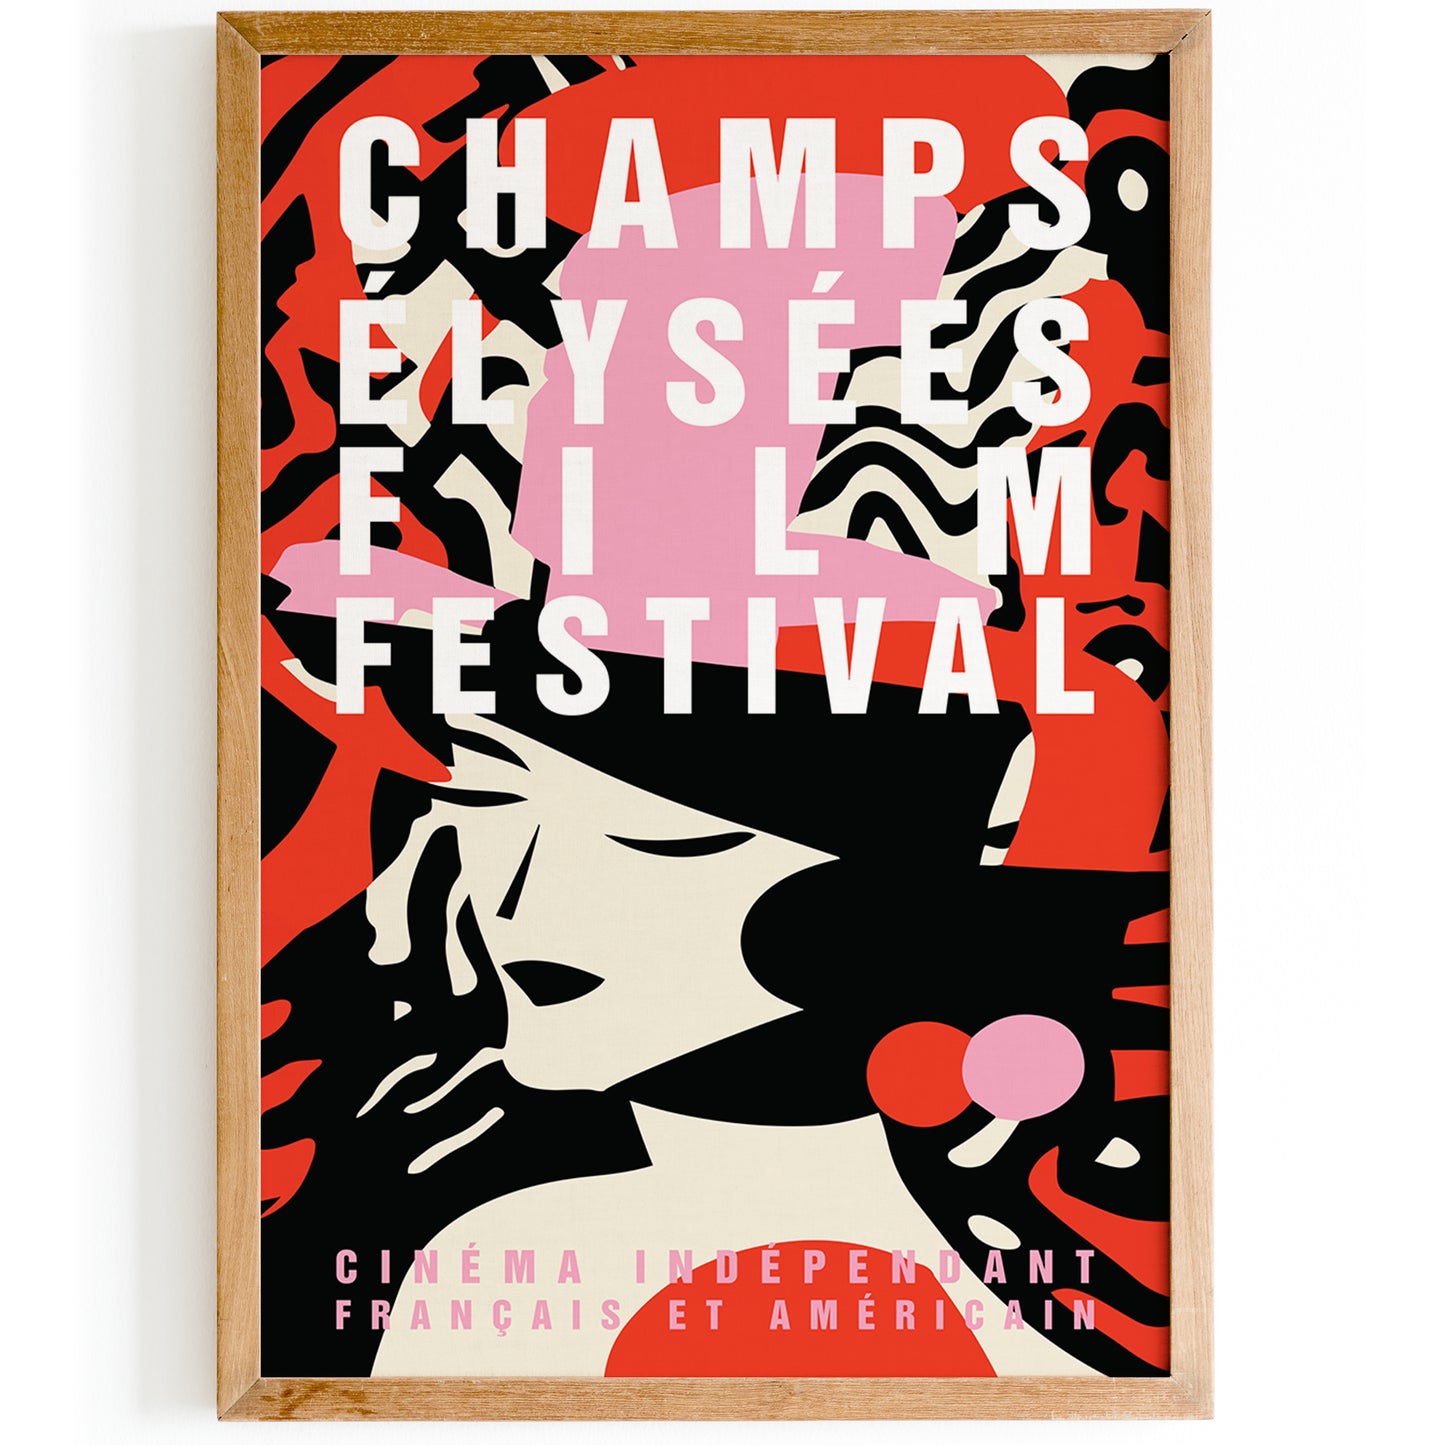 Retro Champs Elysees Film Festival Poster